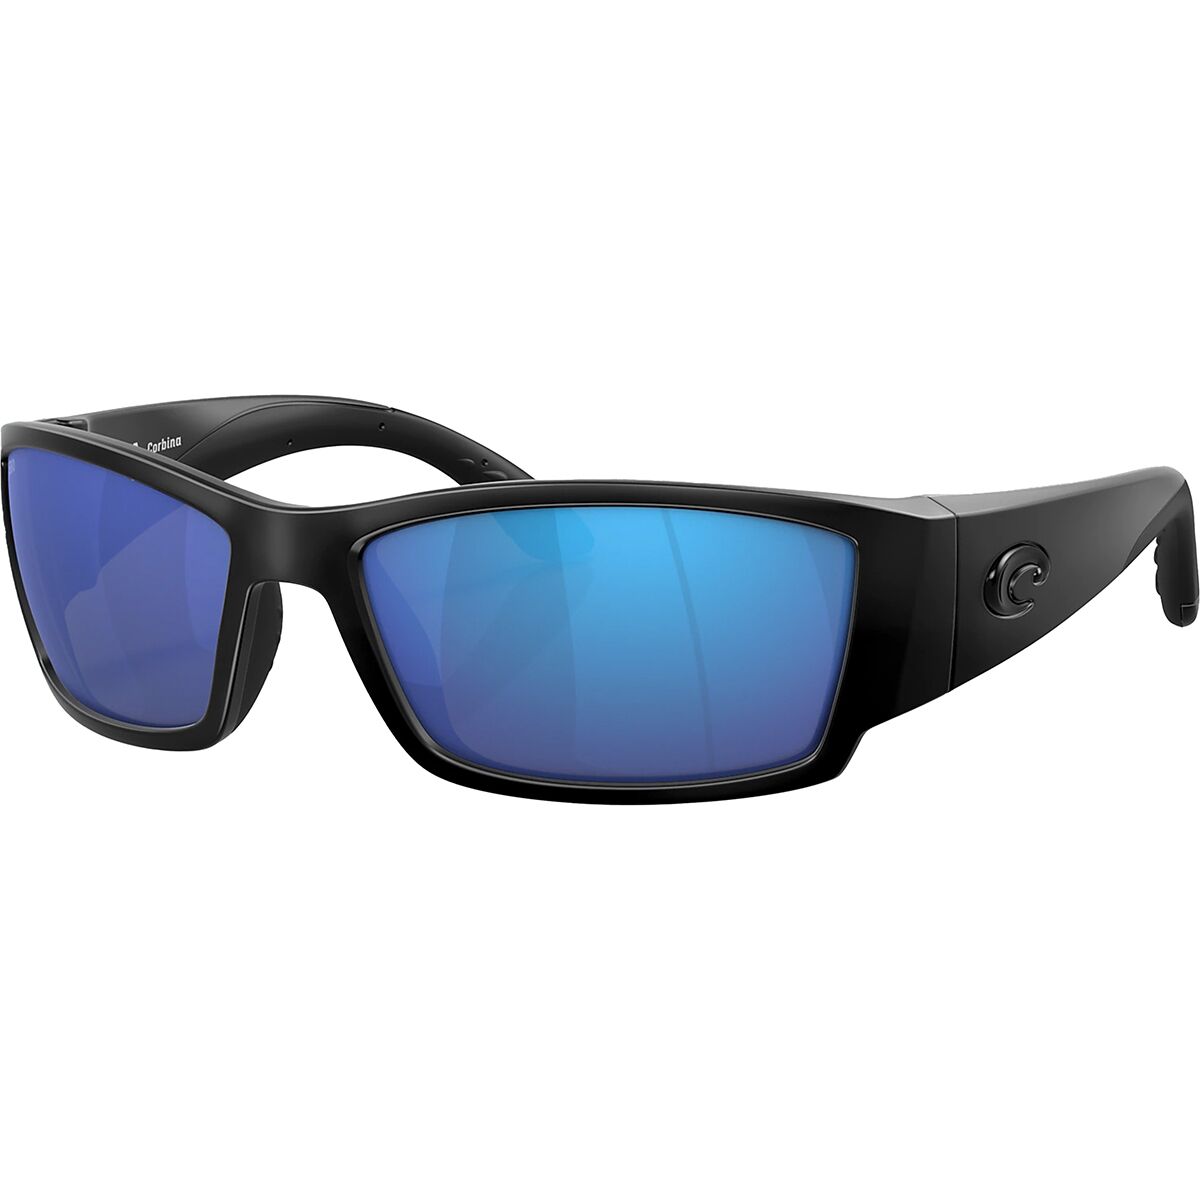 Costa Corbina 580G Polarized Sunglasses